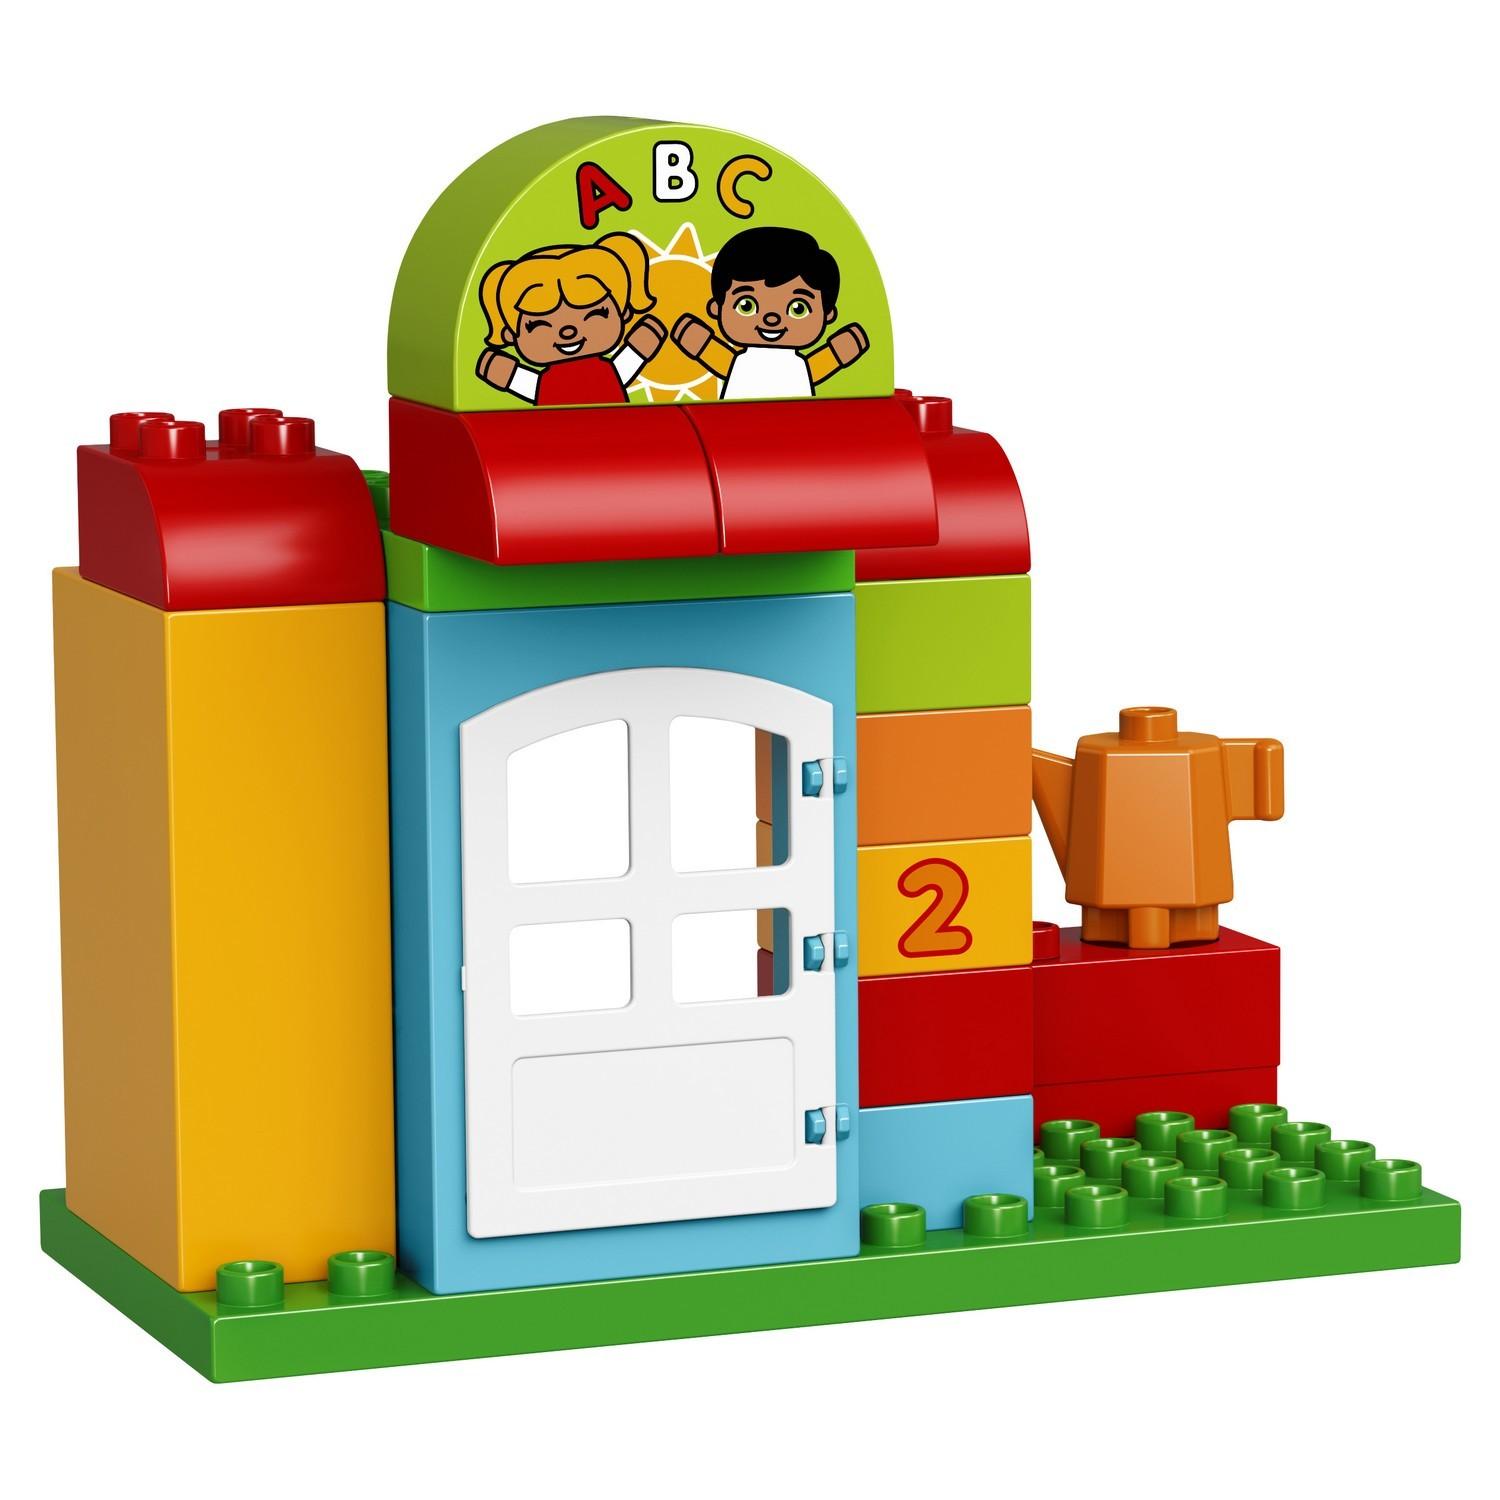 Lego Duplo 10833 Детский сад